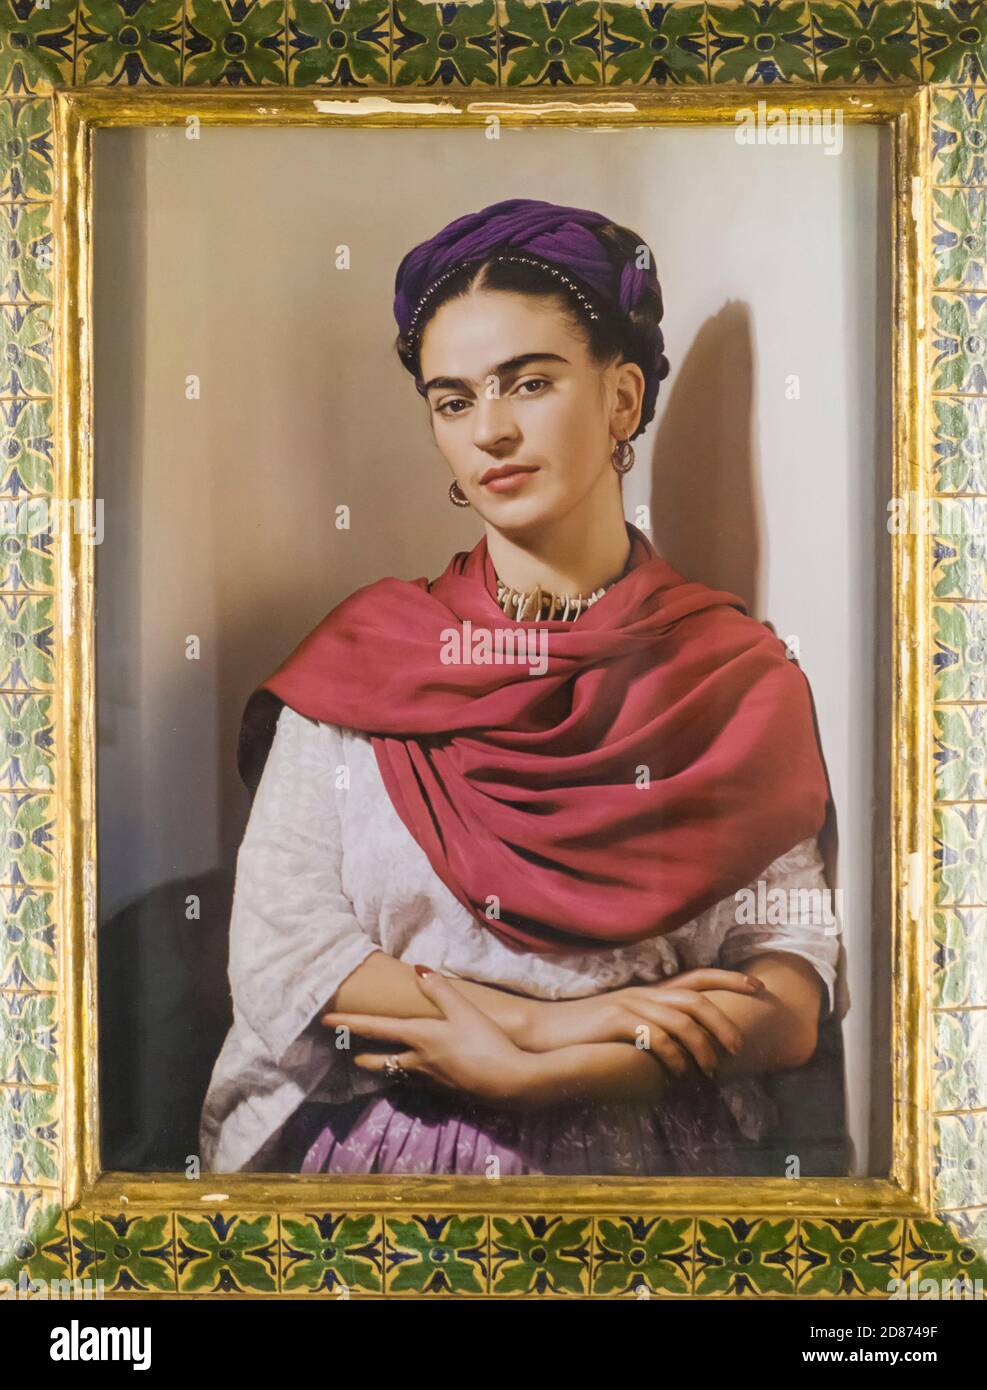 La photo emblématique de l'artiste mexicain Frida Kahlo, de Nicolas Muray, exposée à la Casa Azul (Maison Bleue) Coyoacan, Mexico, Mexique Banque D'Images